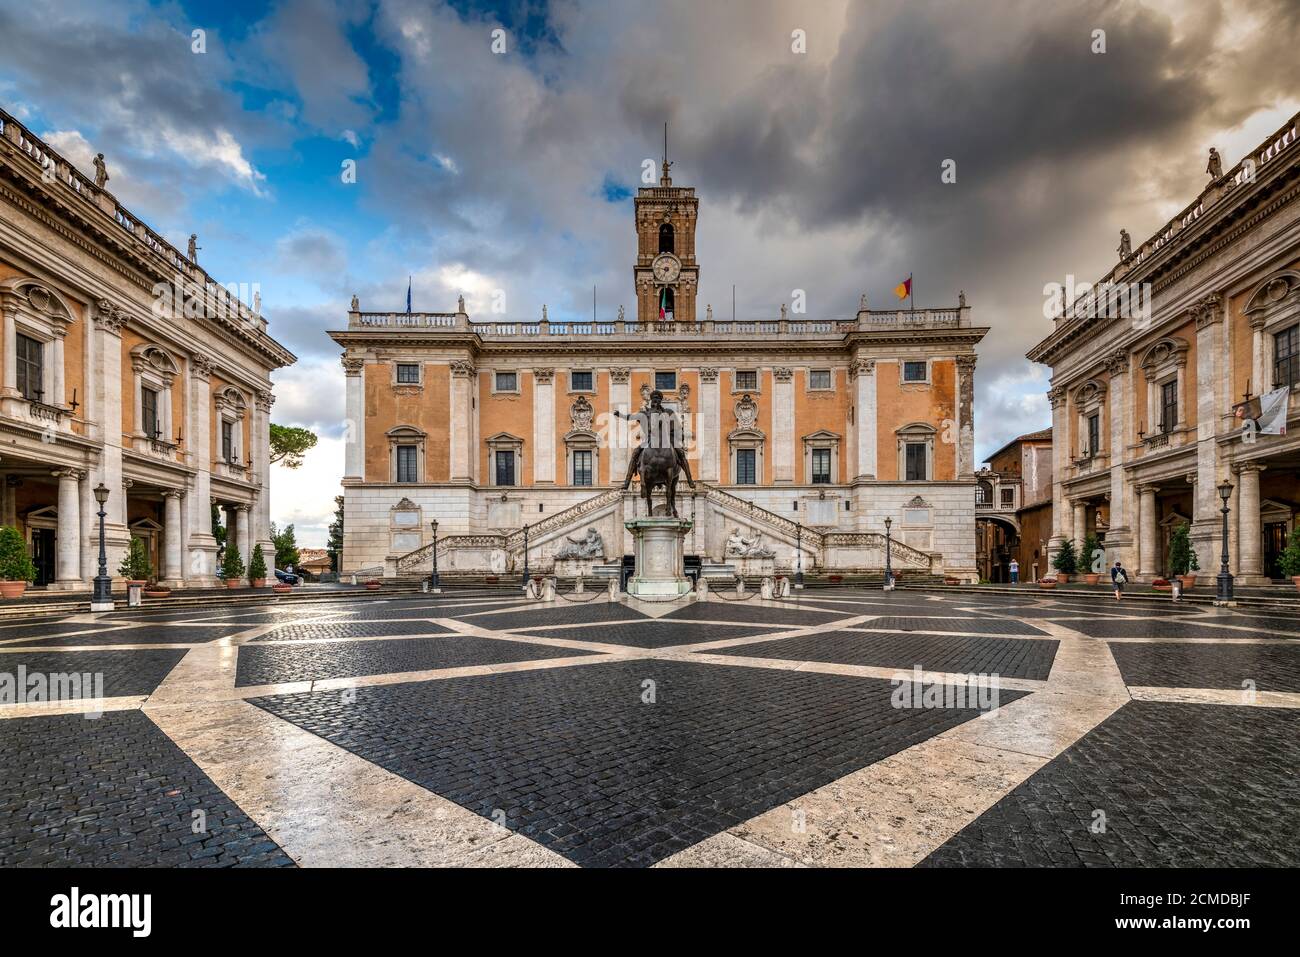 Piazza del Campidoglio with Palazzo Senatorio and the replica of the equestrian statue of Marcus Aurelius, Rome, Lazio, Italy Stock Photo